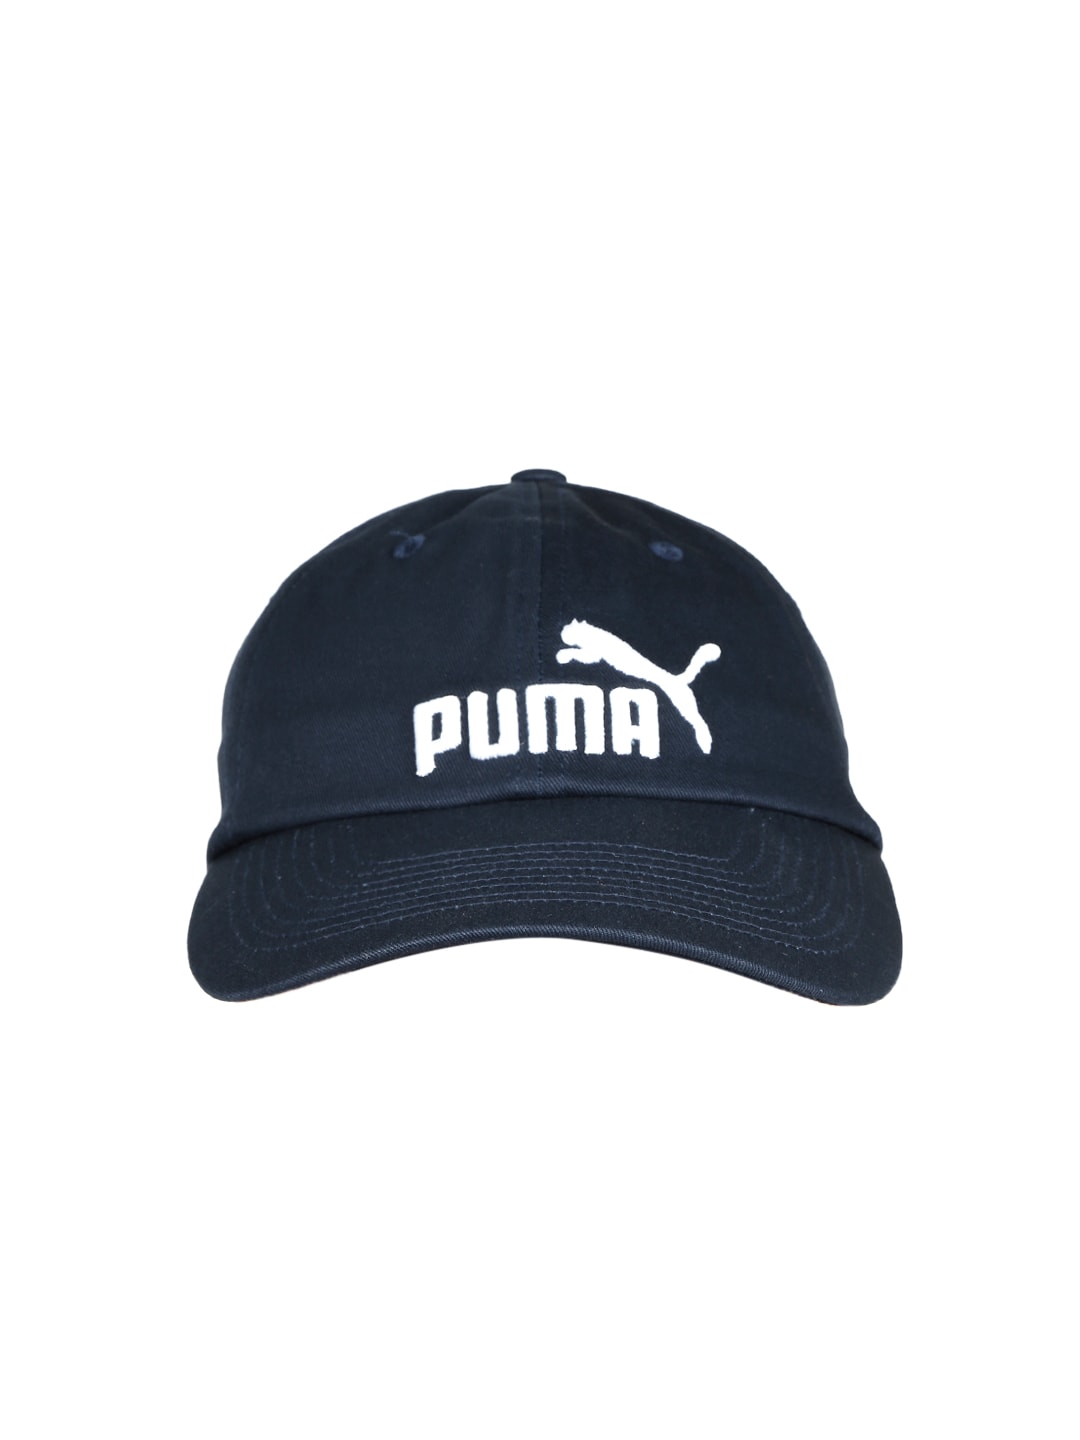 Puma Unisex Navy ESS Cap Price in India